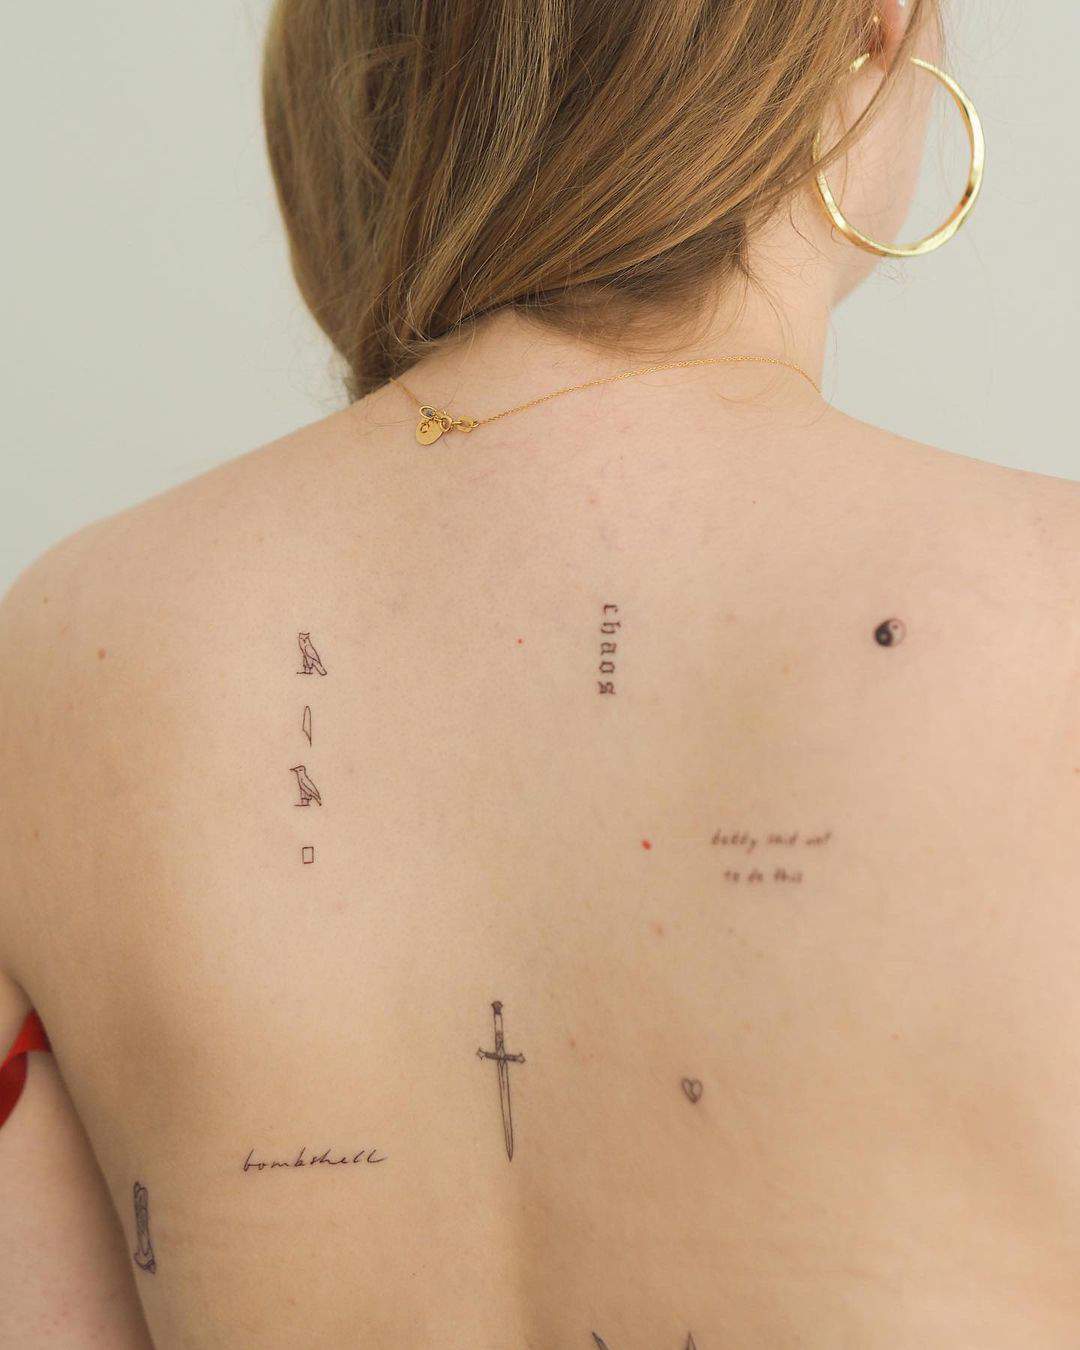 Composición de tattoos personalizada sobre la espalda